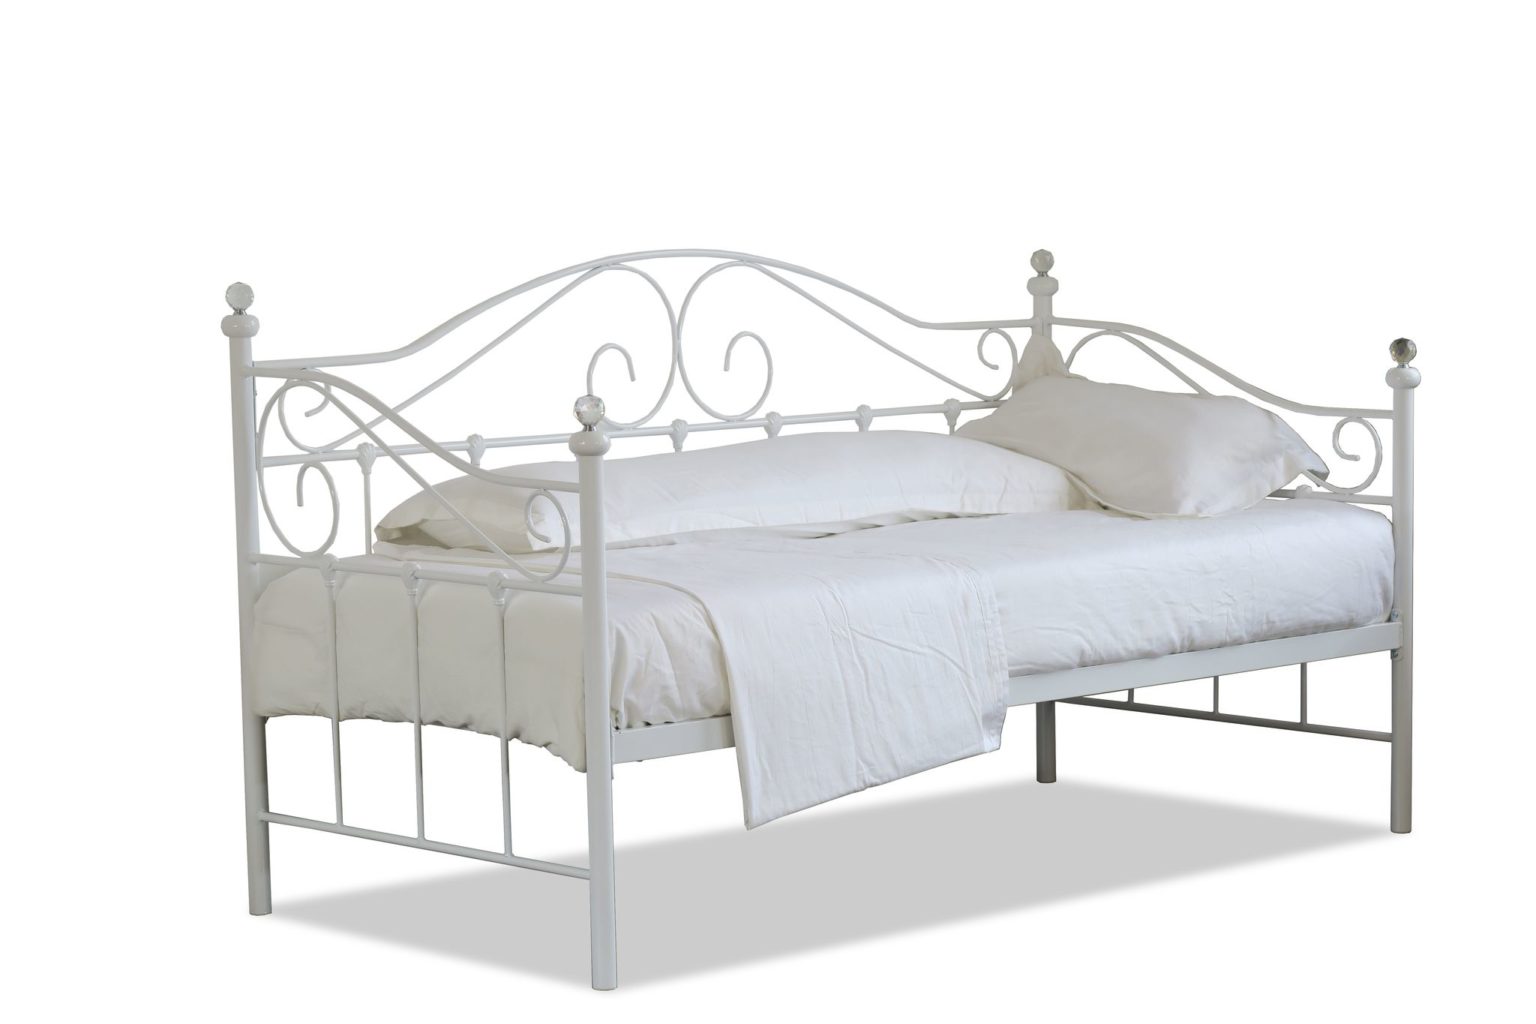 single mattress metal bed frame